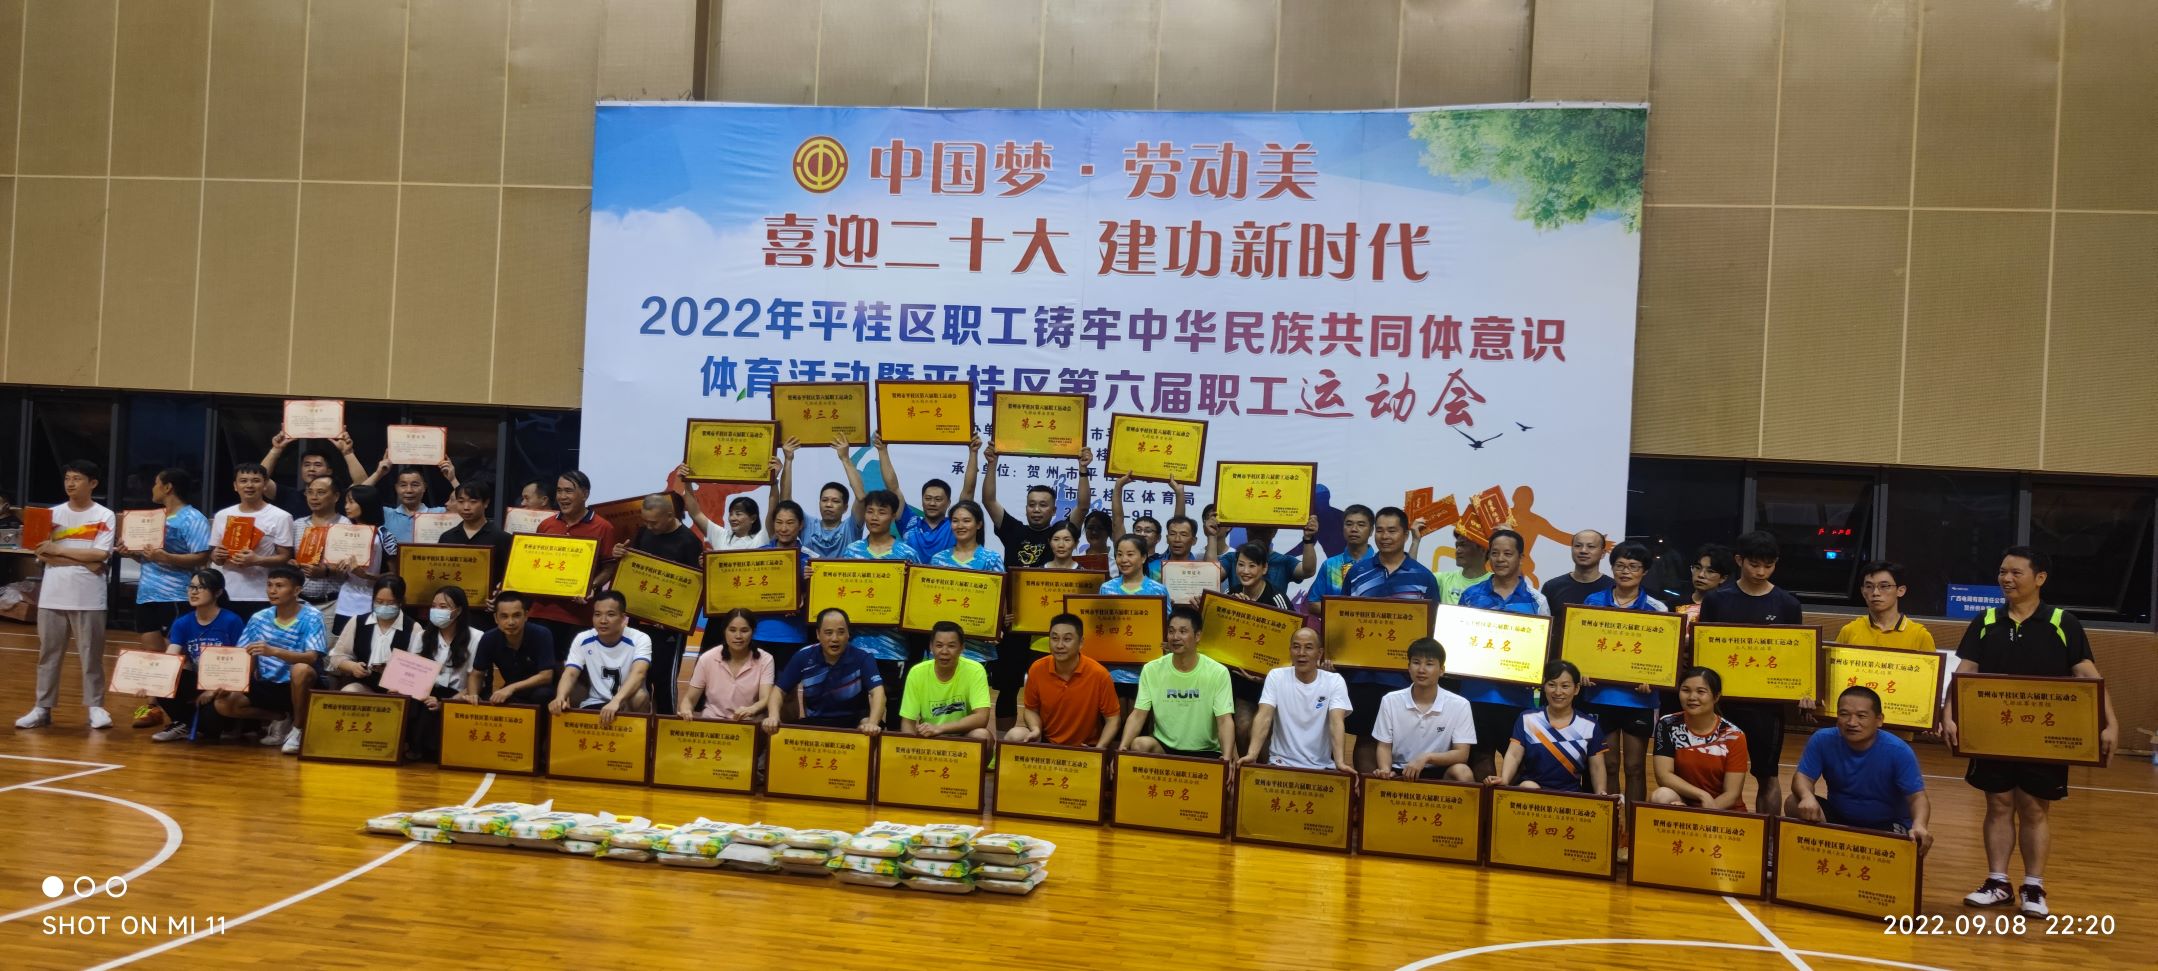 科隆公司參加2022年平桂區第六屆職工運動會喜報